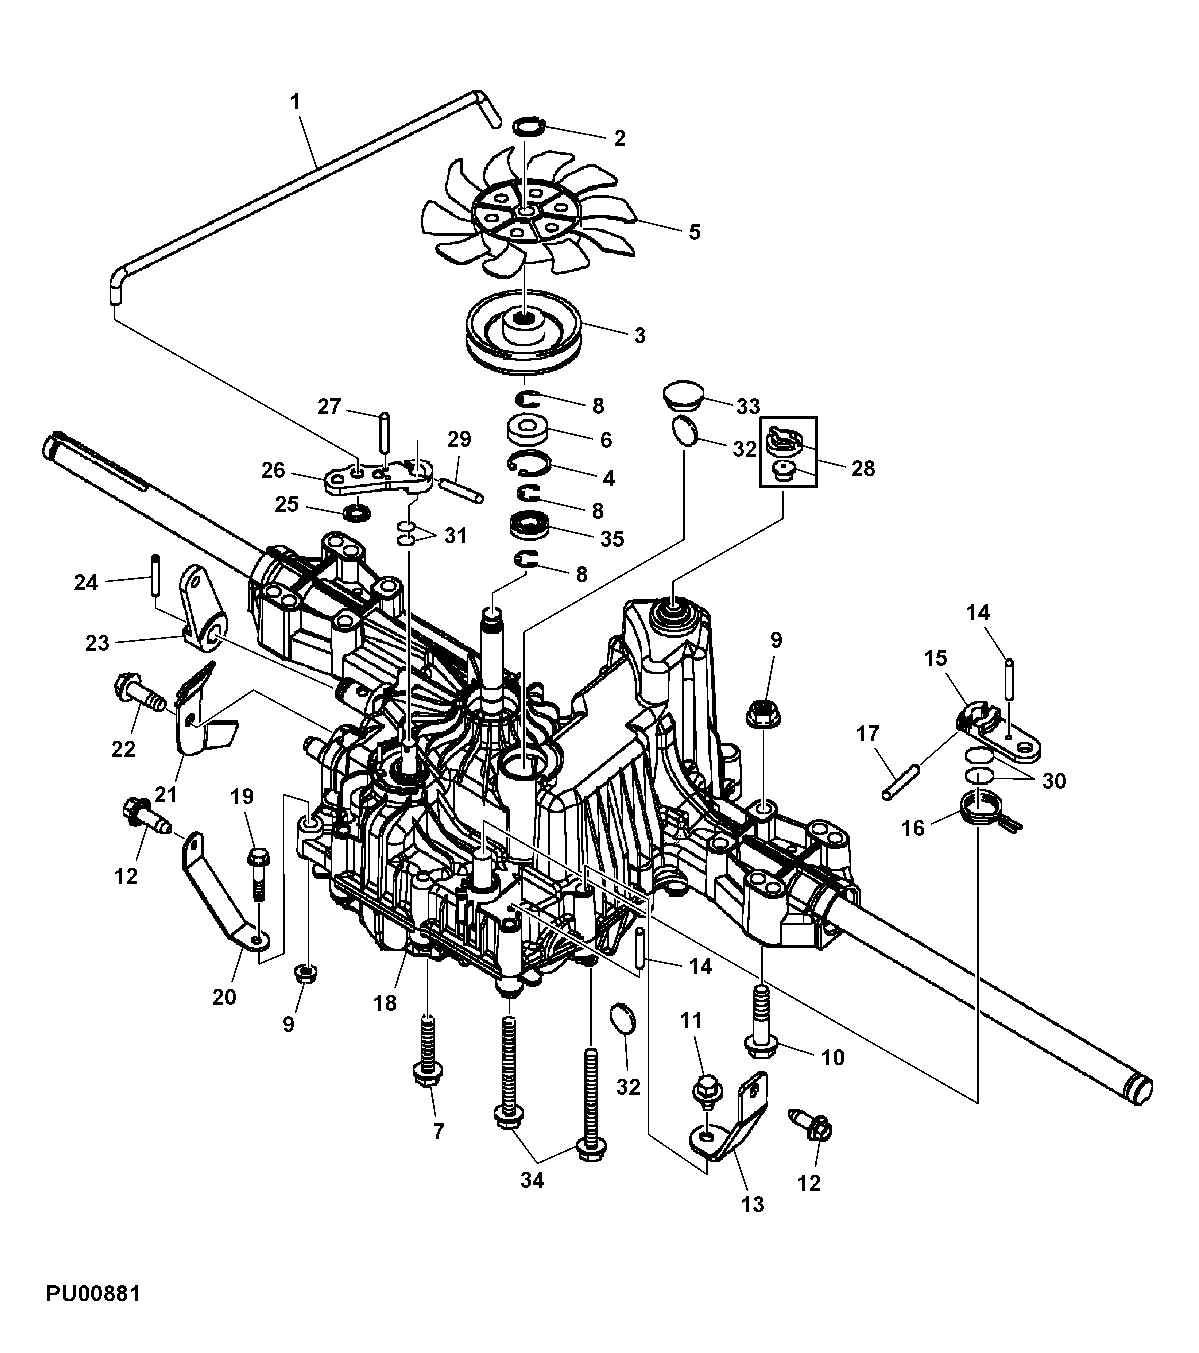 John Deere Parts Diagrams